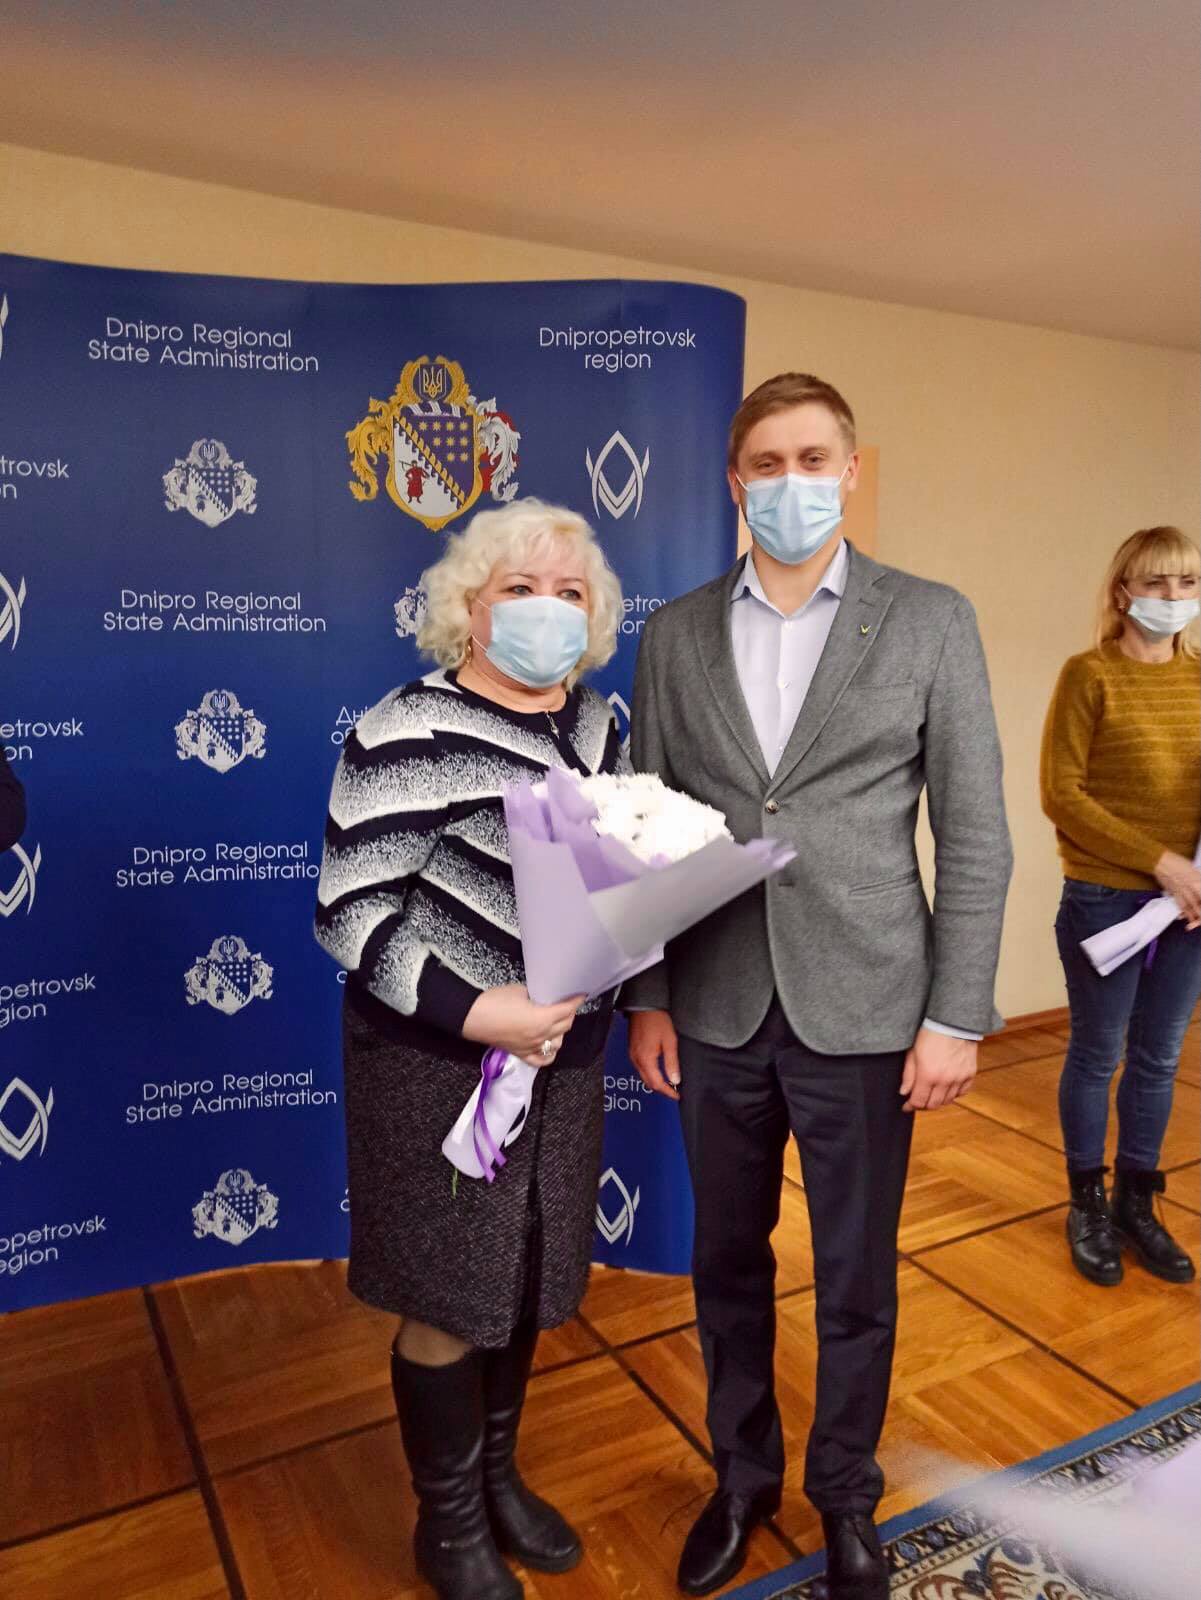 Волонтер из Никополя получила награду за помощь участникам ООС